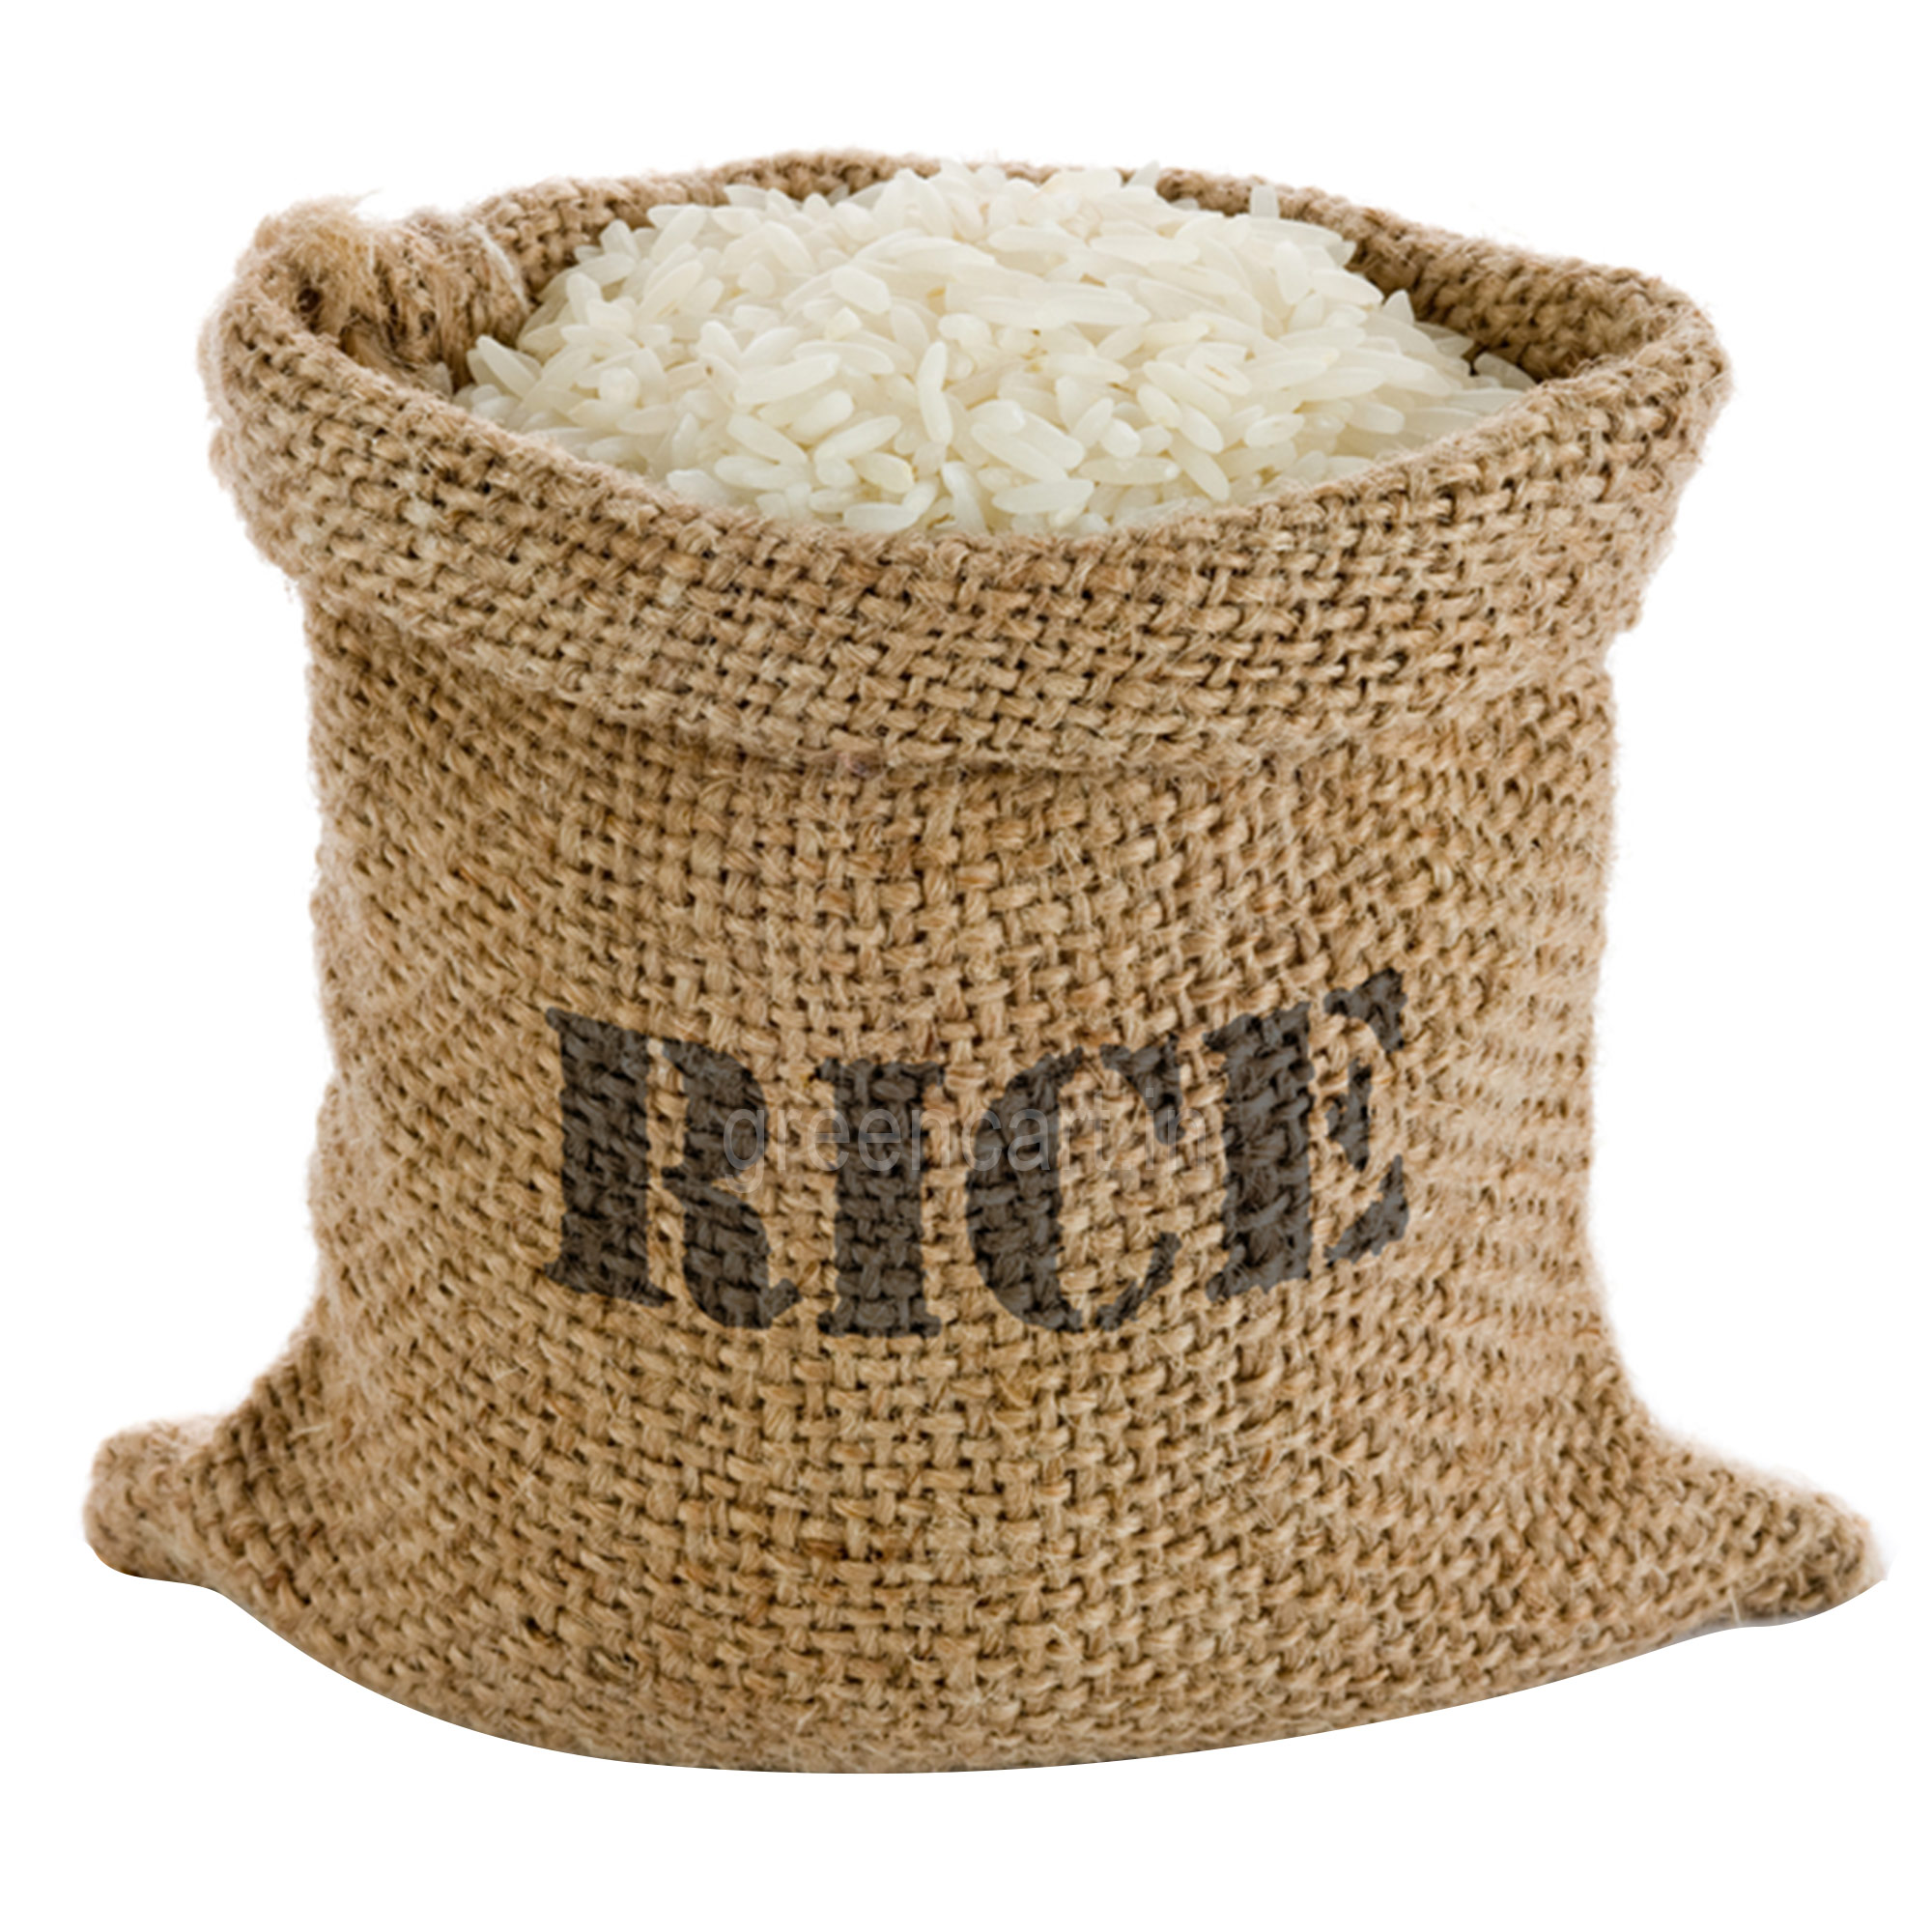 Rice sacks, Rice Sacks Free D